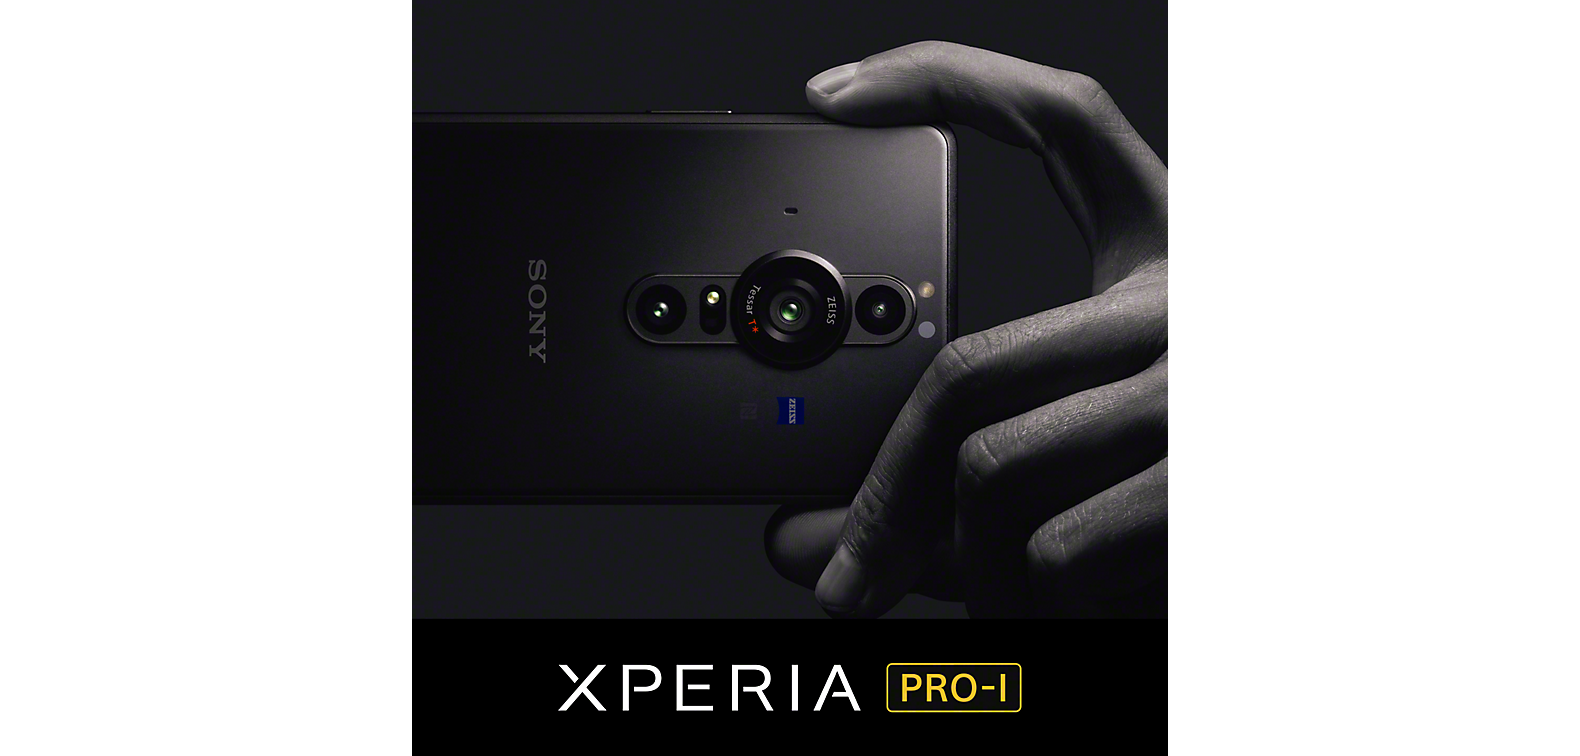 Käsi pitelee mustaa Xperia PRO-I -älypuhelinta Xperia PRO-I -logon yläpuolella.